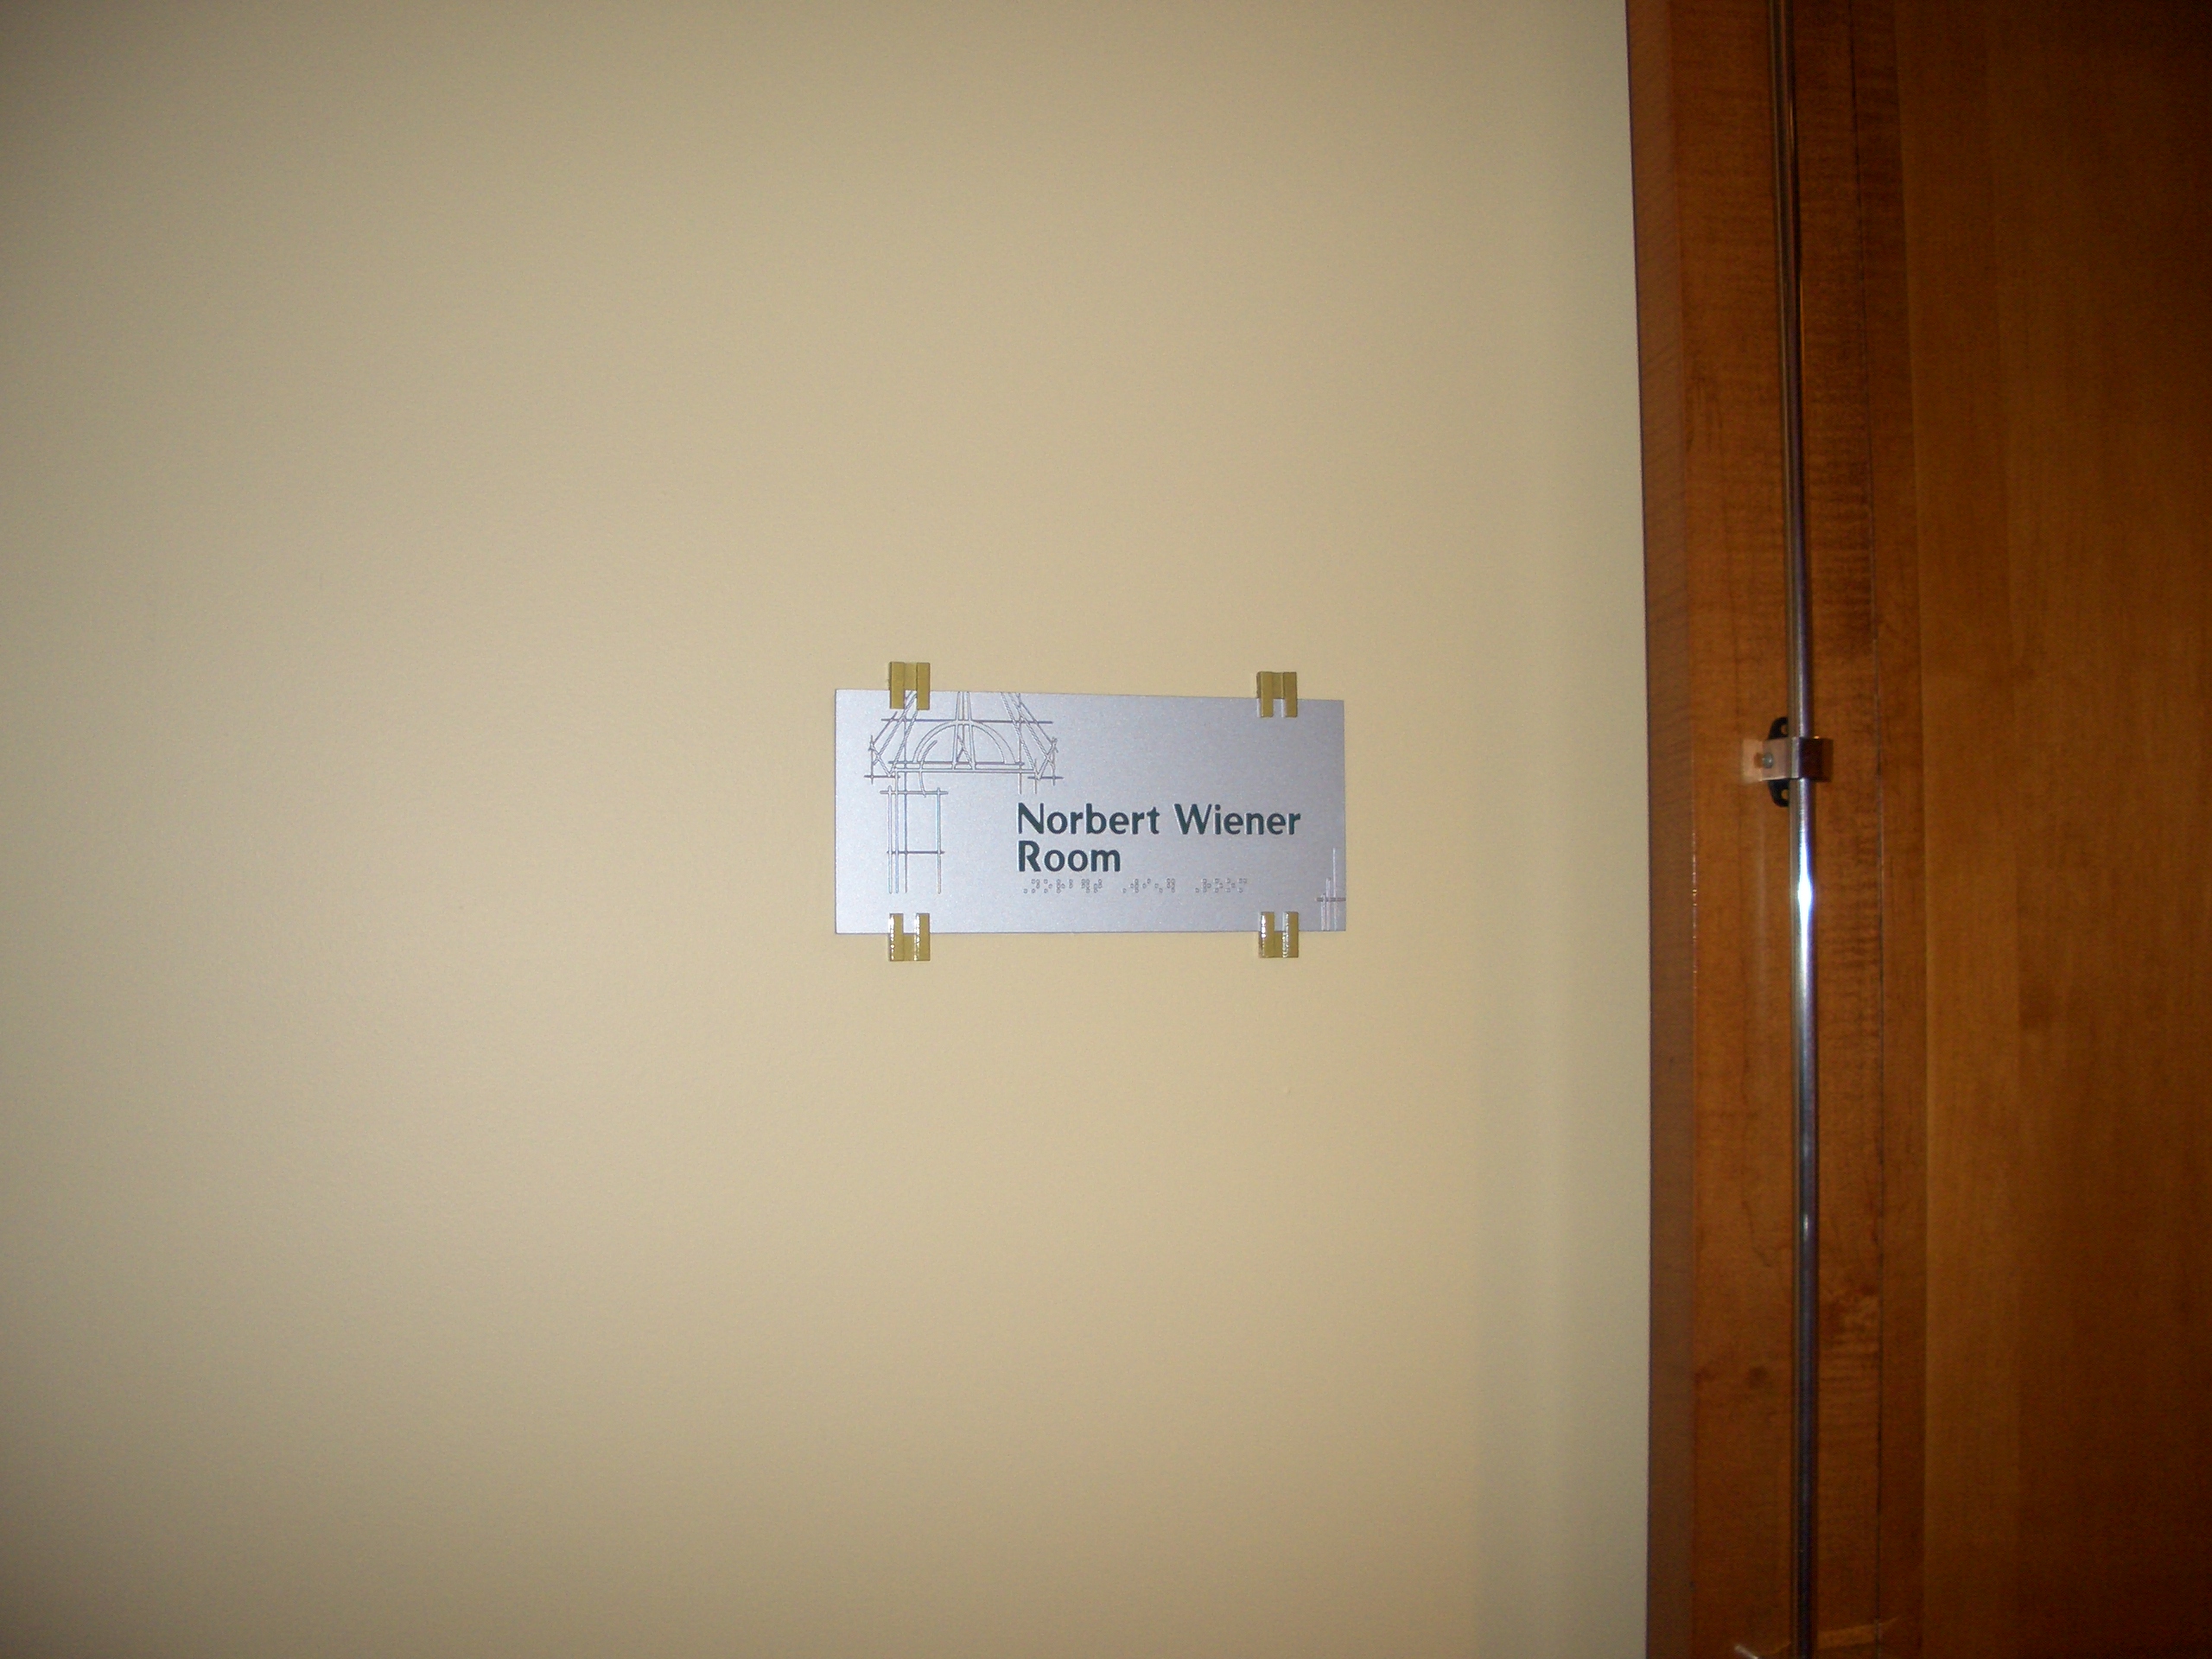 `Norbert Wiener' Room (Entrance Door) in MIT Hotel, Cambridge, USA